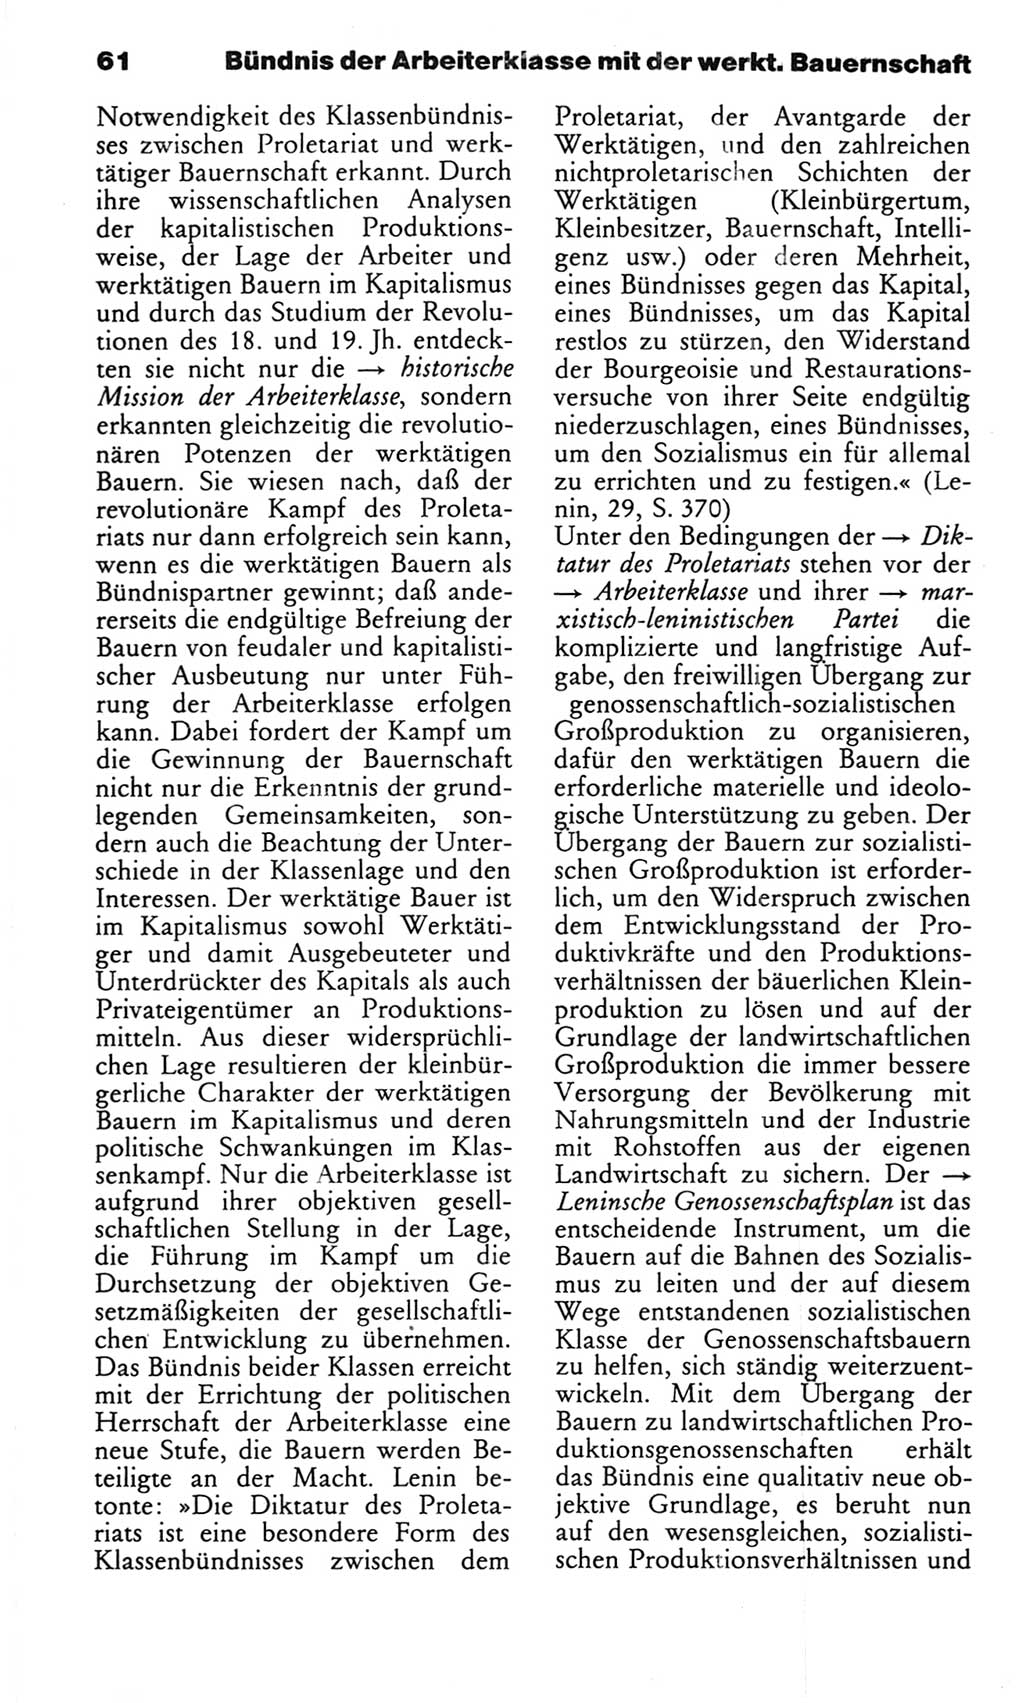 Wörterbuch des wissenschaftlichen Kommunismus [Deutsche Demokratische Republik (DDR)] 1982, Seite 61 (Wb. wiss. Komm. DDR 1982, S. 61)